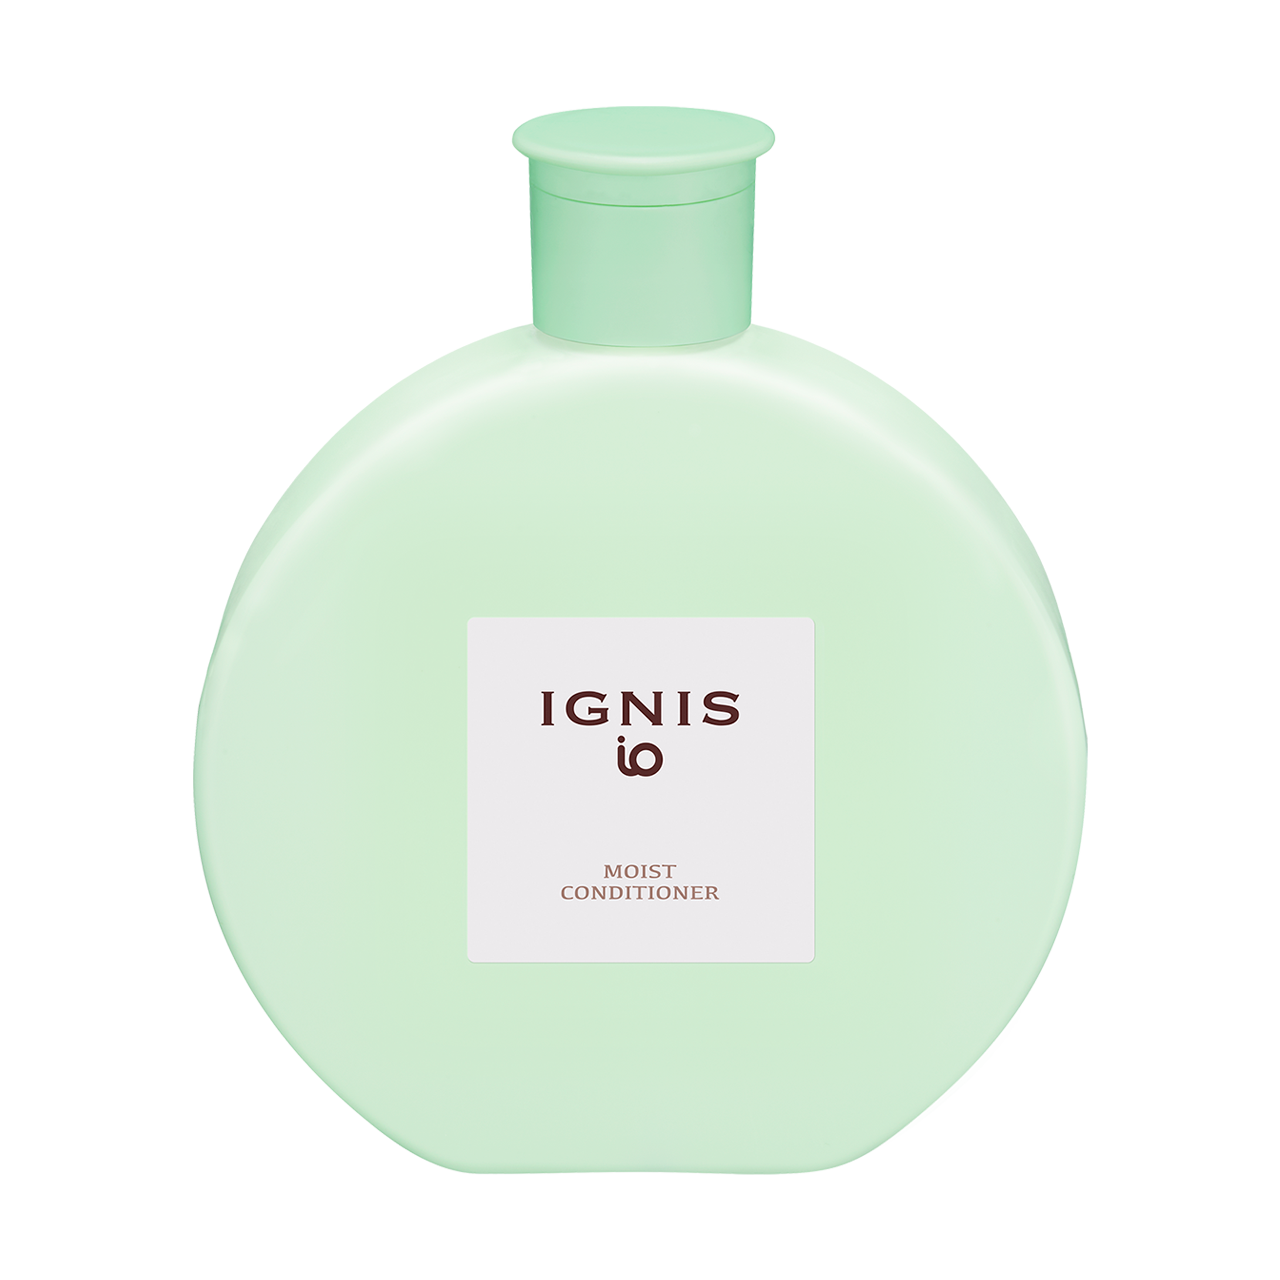 モイスト コンディショナー | IGNIS iO （イグニス イオ）公式サイト